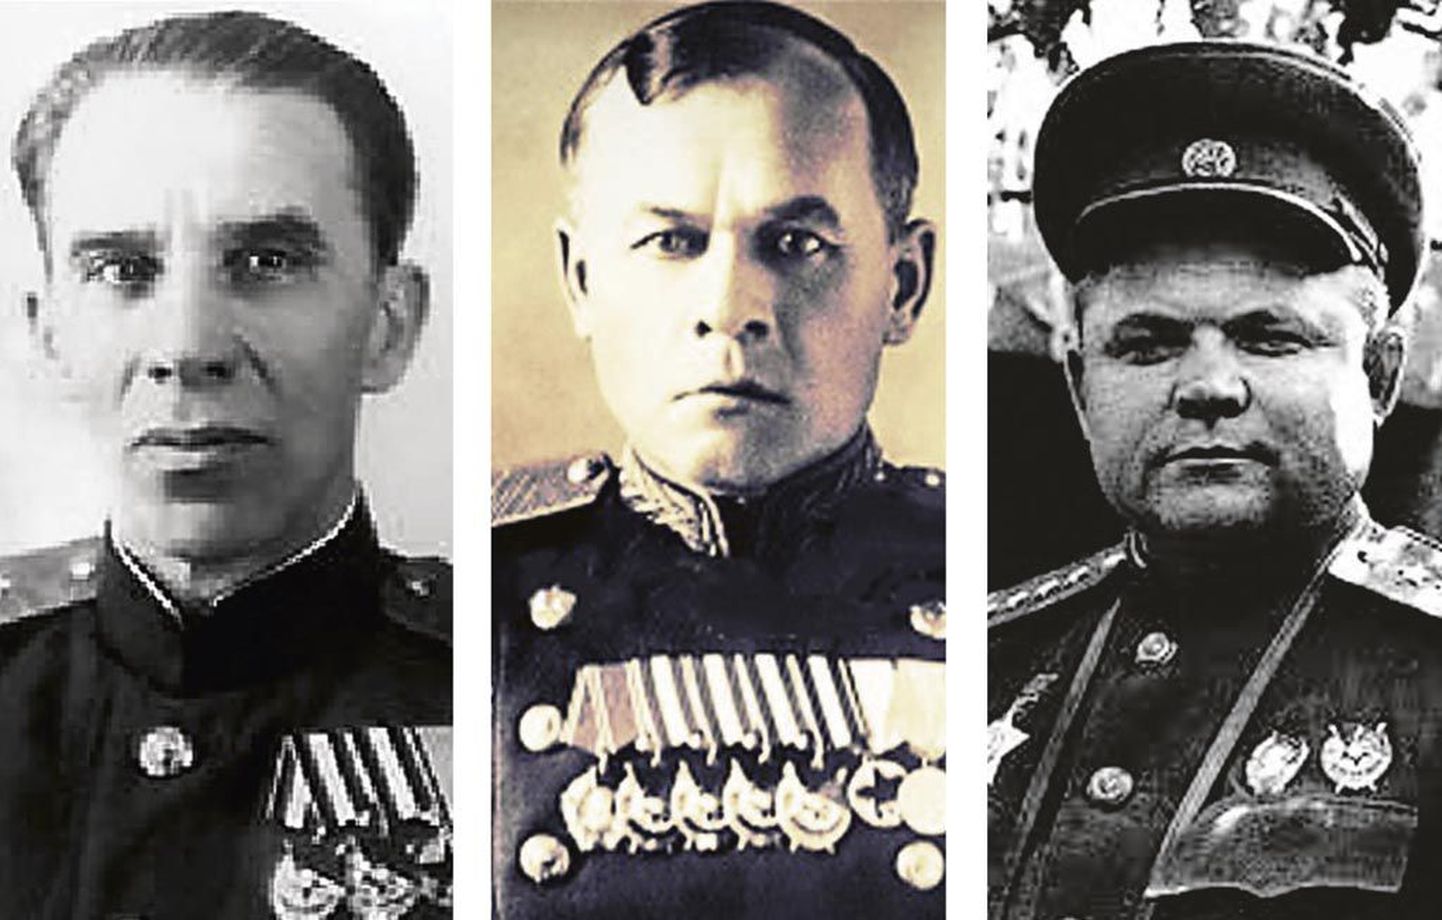 Punaarmee kindralid Ivan Nikolajev (vasakul), Ivan Fadejev (keskel) ja Nikolai Vatutin (paremal) saatsid armee kindralstaapi teate fantoomdessandist Pärnu all, et põhjendada sõjalist ebaedu ja päästa oma nahk.